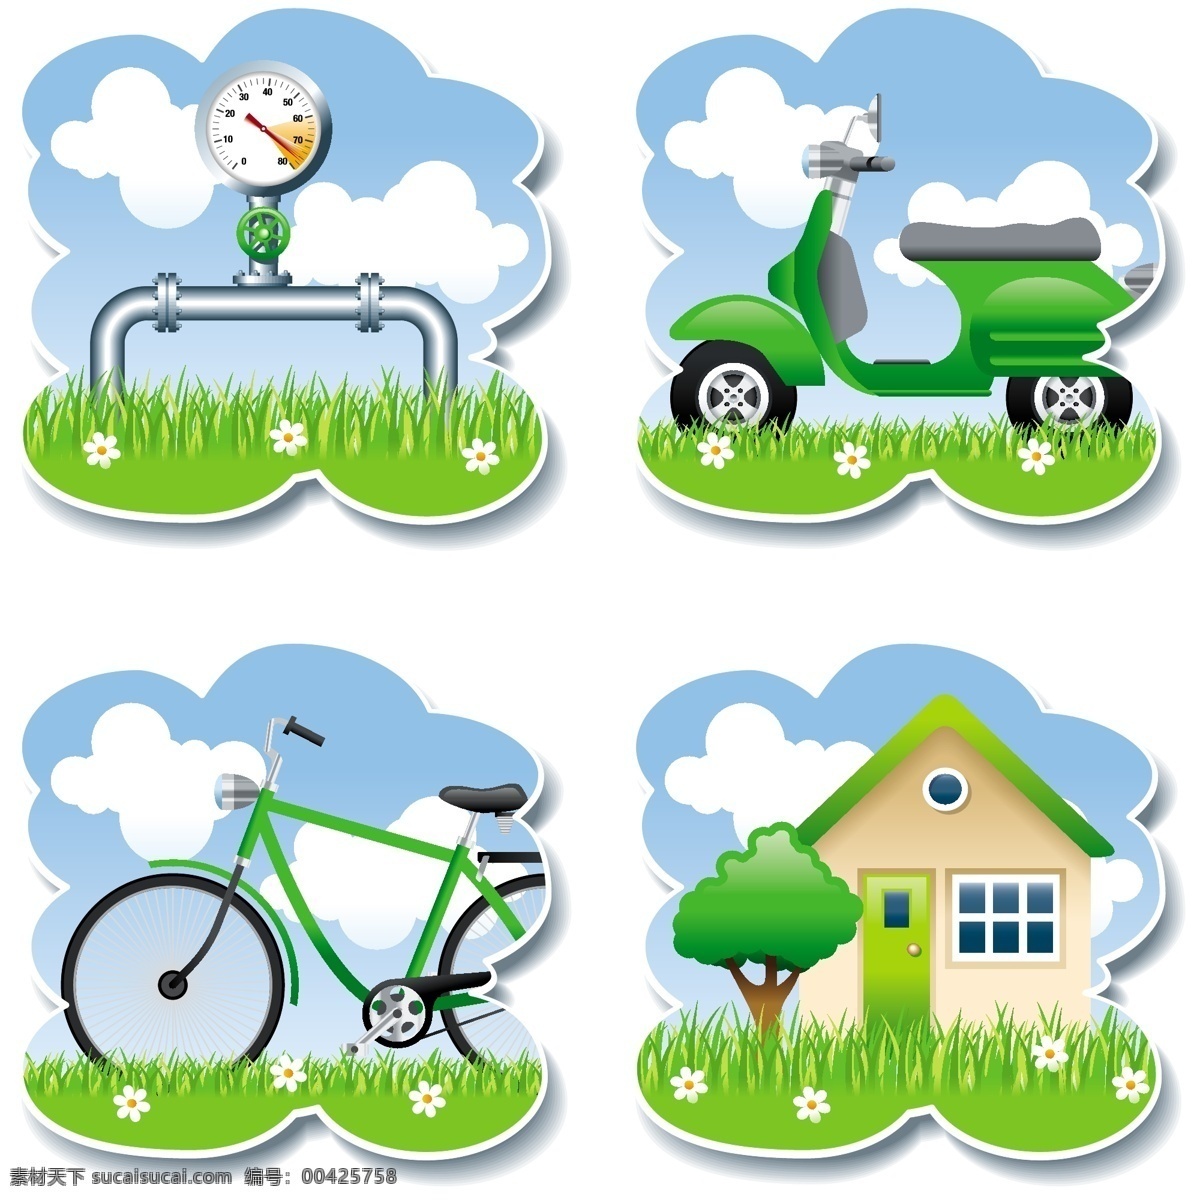 生态环境 摩托车 自行车 单车 房屋 生态房屋 环保模特 环保房屋 生态图标 生态元素 生态素材 生态背景 交通工具 现代科技